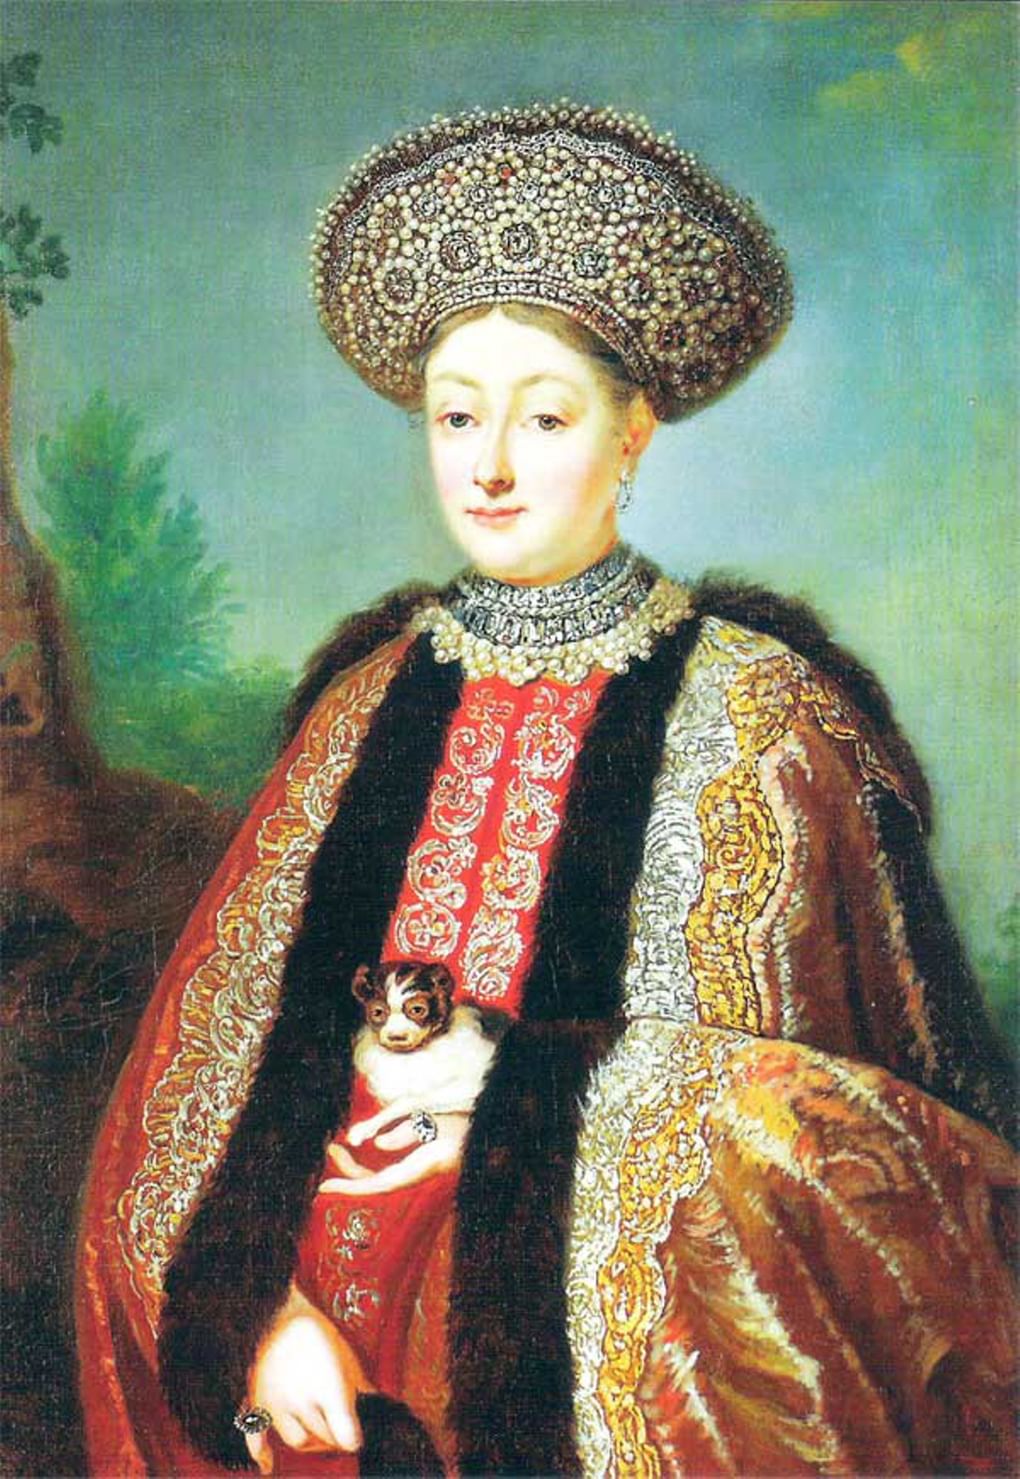 Неизвестный художник. Портрет царицы Марфы Апраксиной (18 век, ГМЗ Гатчина)